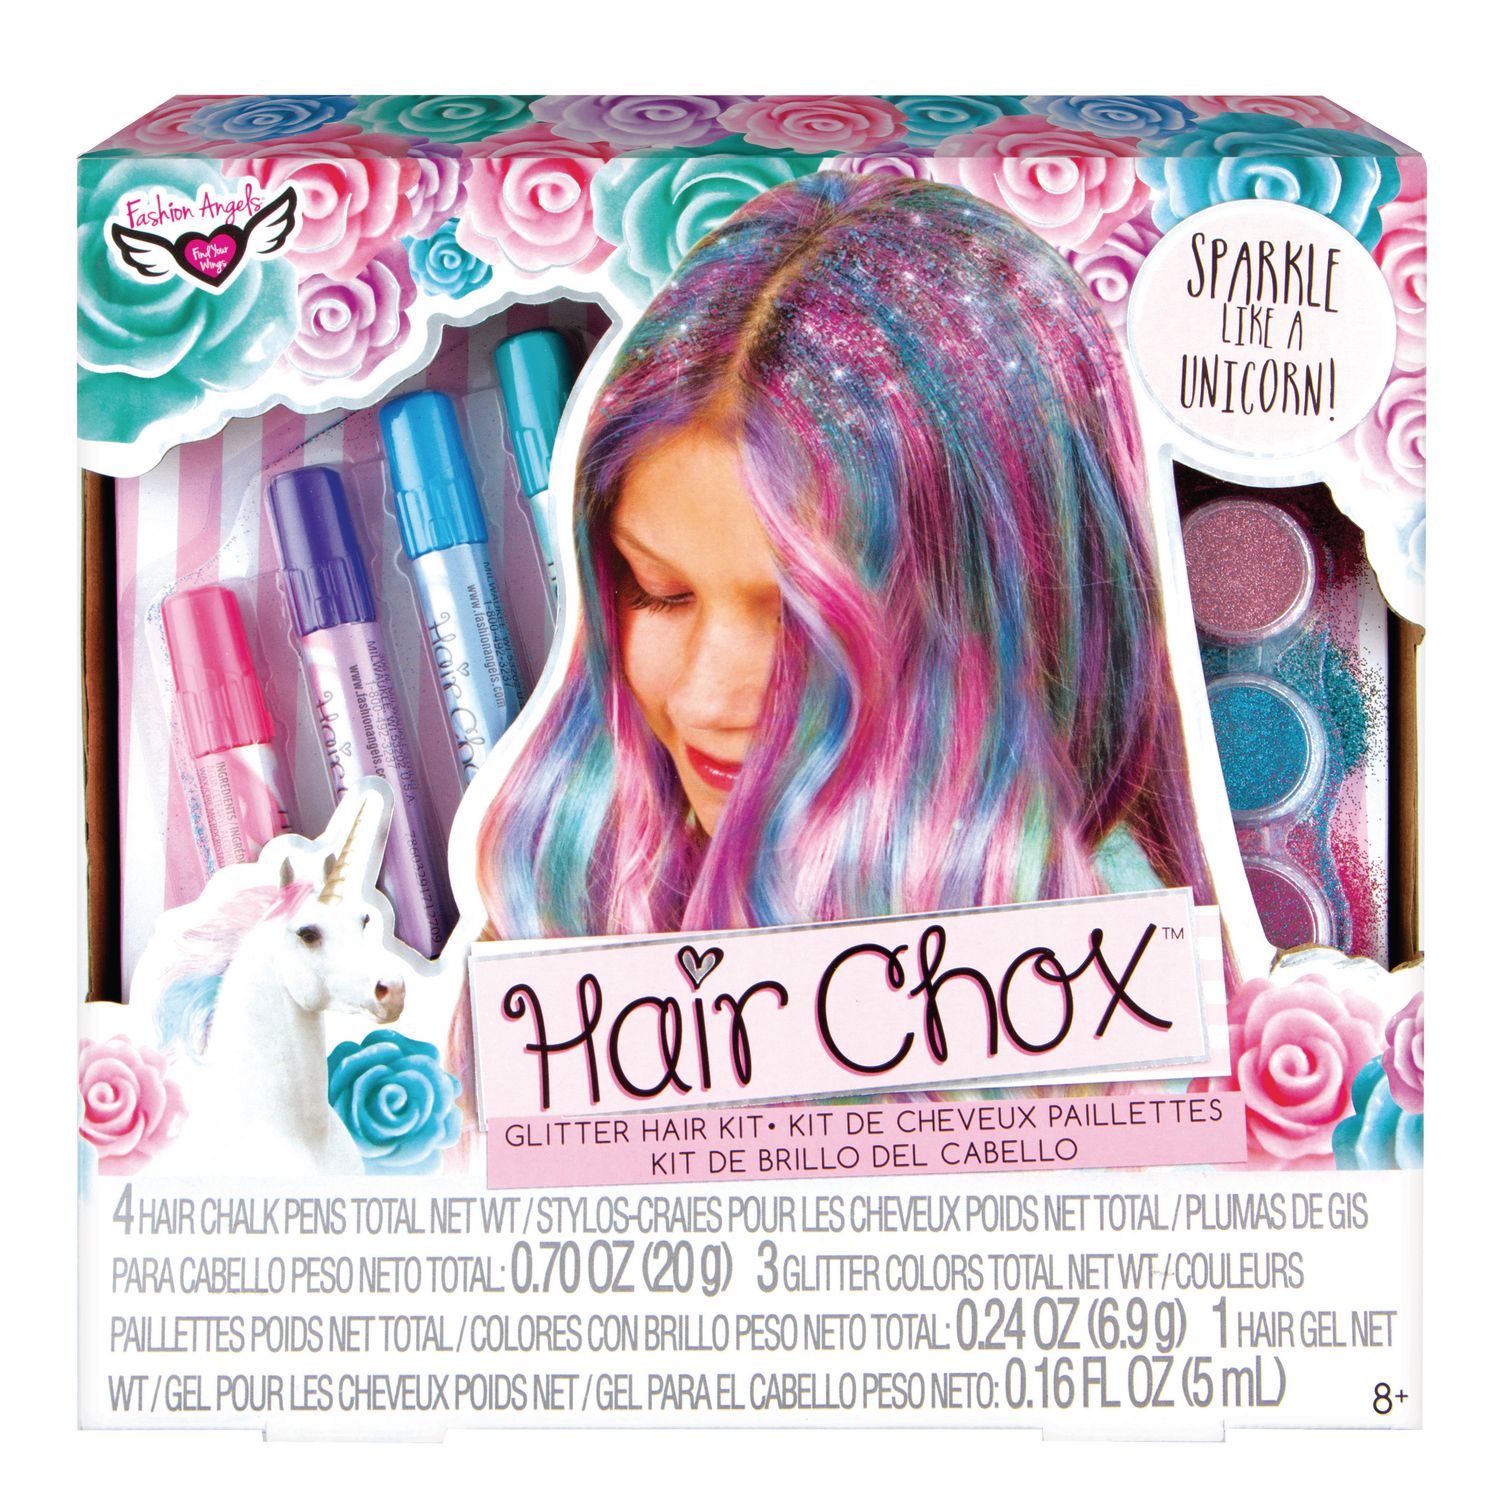 Fashion Angels Unicorn Hair Chox Glitter Hair Kit | Walmart Canada